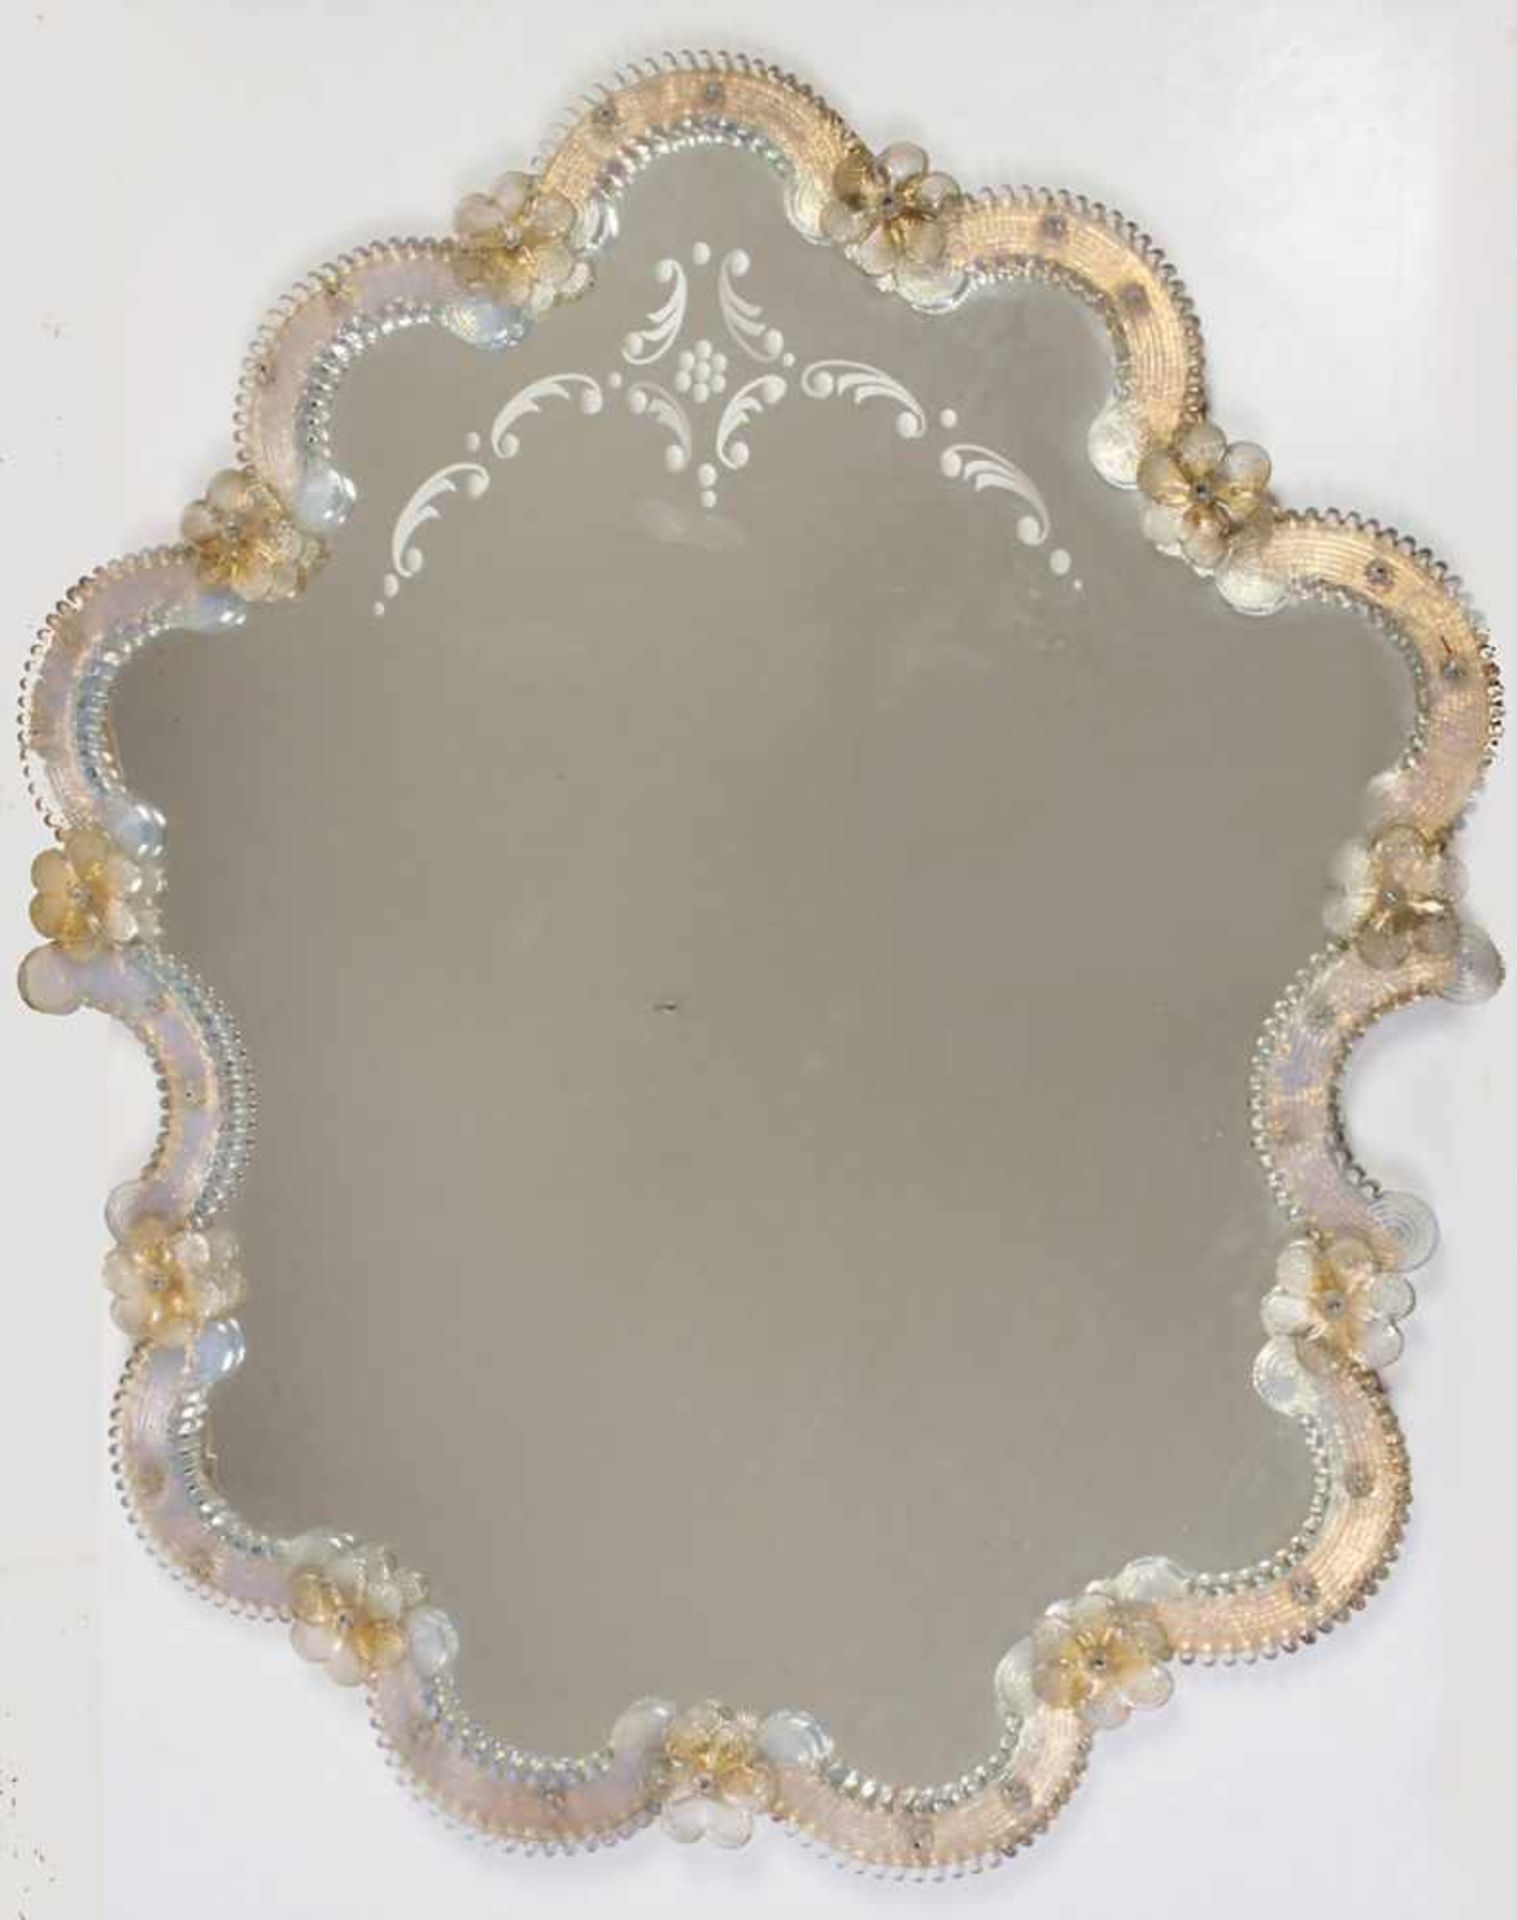 Muranospiegel mit Blütenbesatz / A Murano mirror with flowersMaterial: Spiegelglas, farbloses Glas